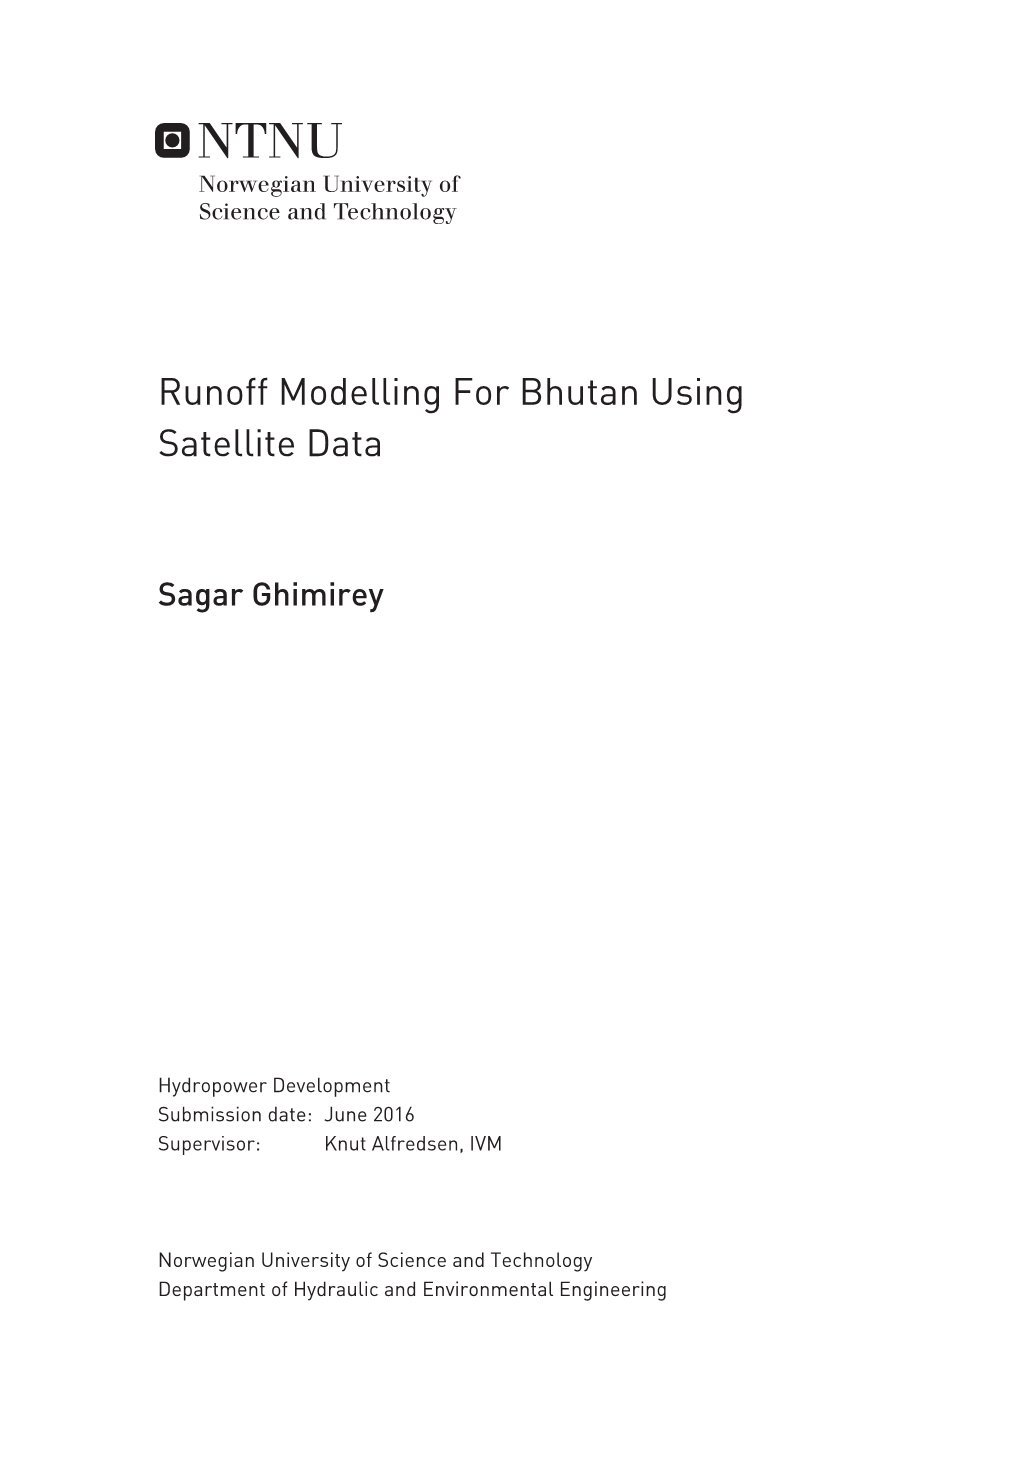 Runoff Modelling for Bhutan Using Satellite Data